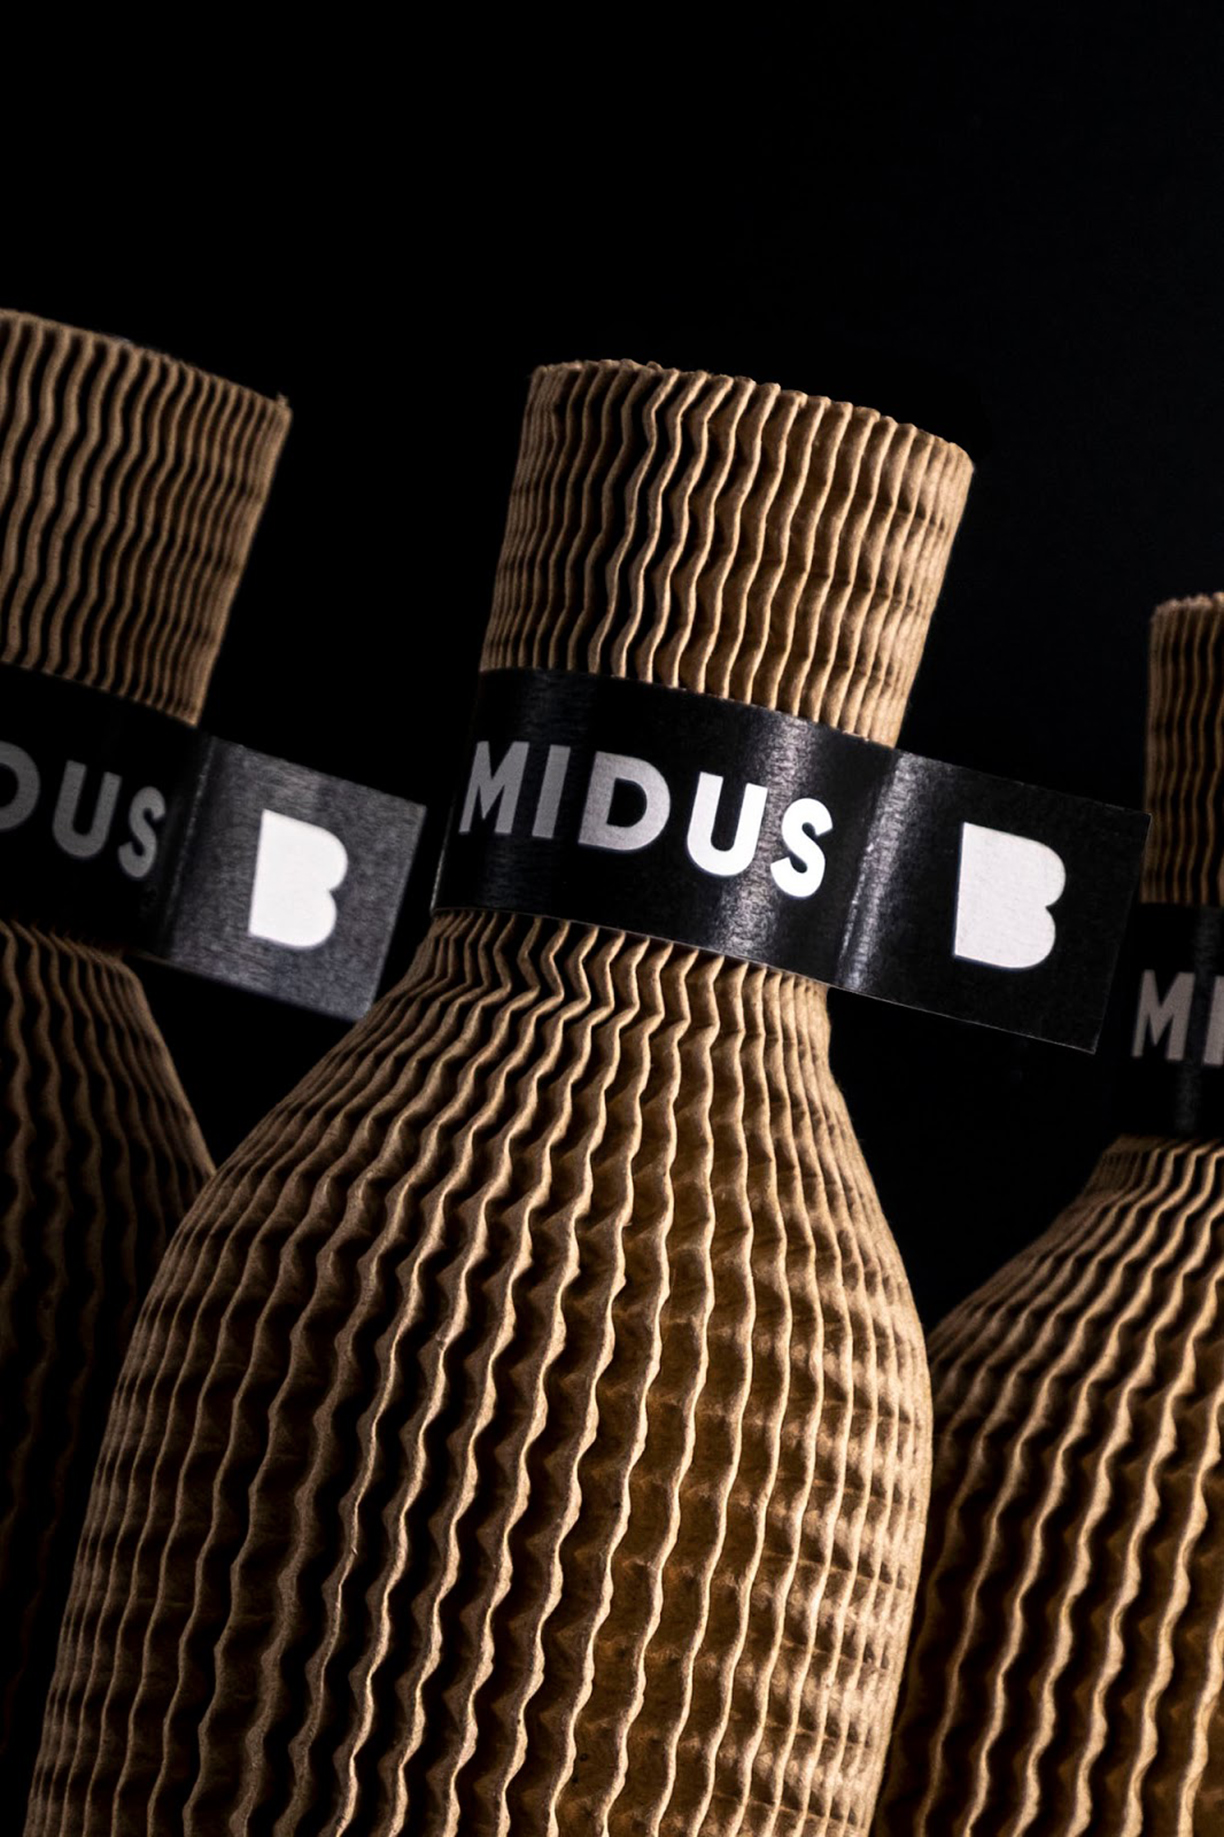 Midus-02.jpg